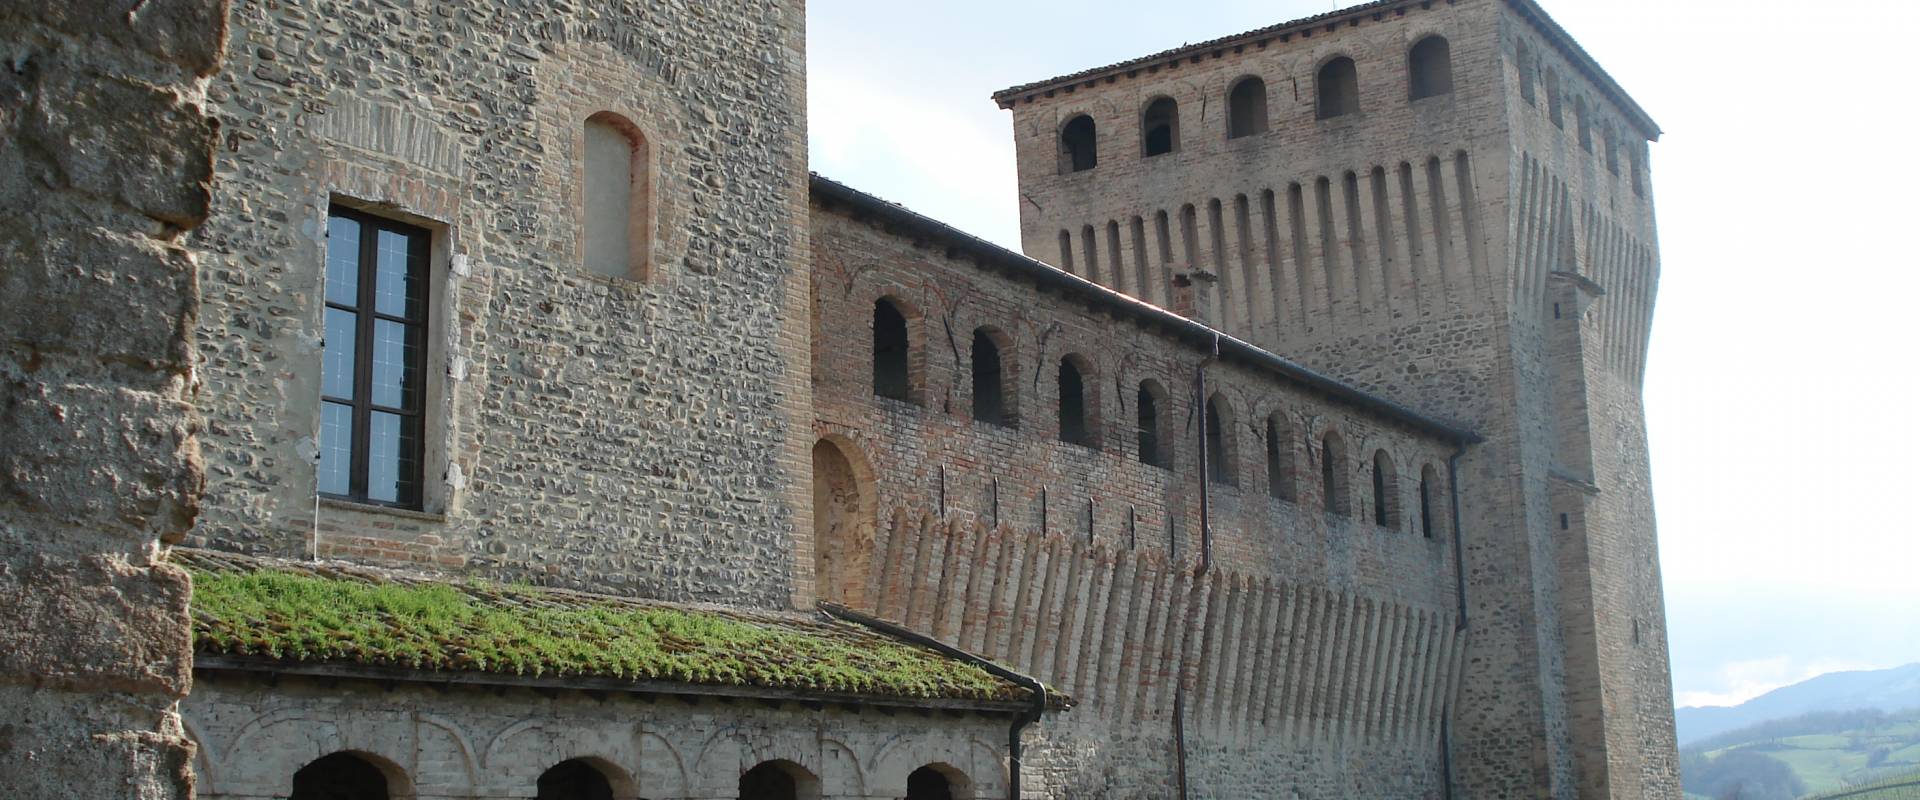 Castello di Torrechiara 06 photo by Postcrosser